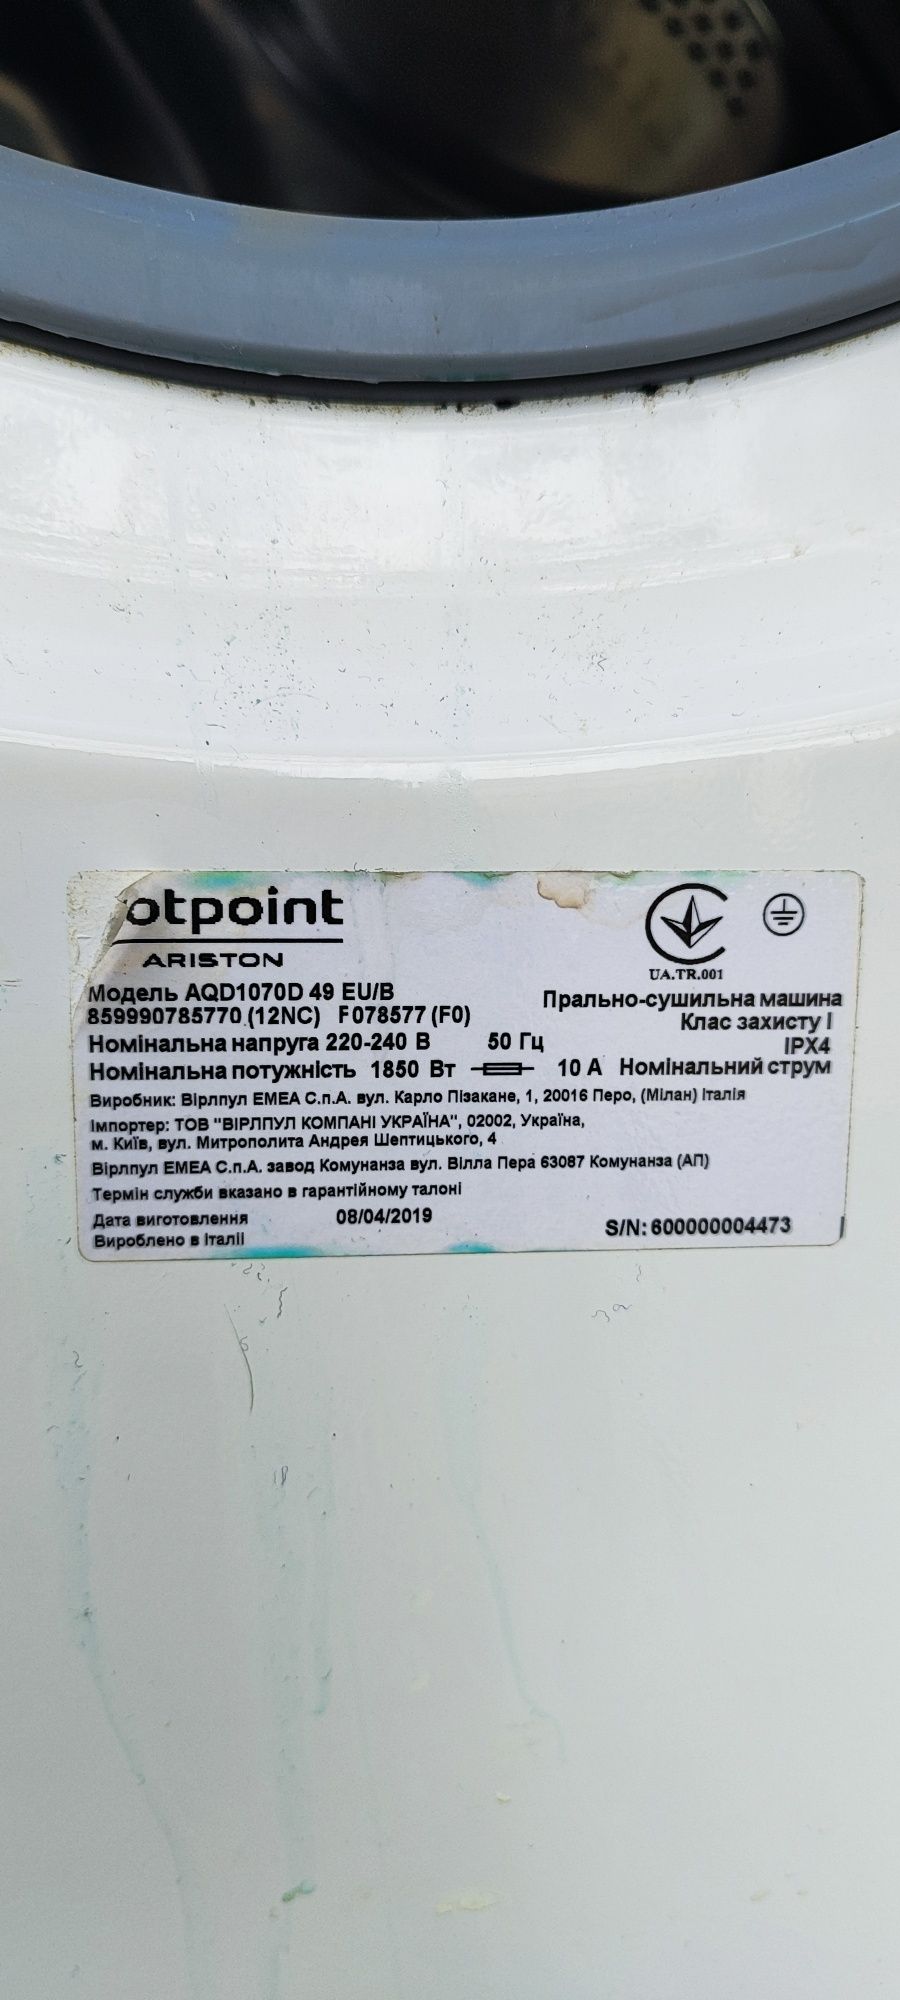 Продам пральний сушильний автомат HOTPOINT ARISTON AQD1070D 49